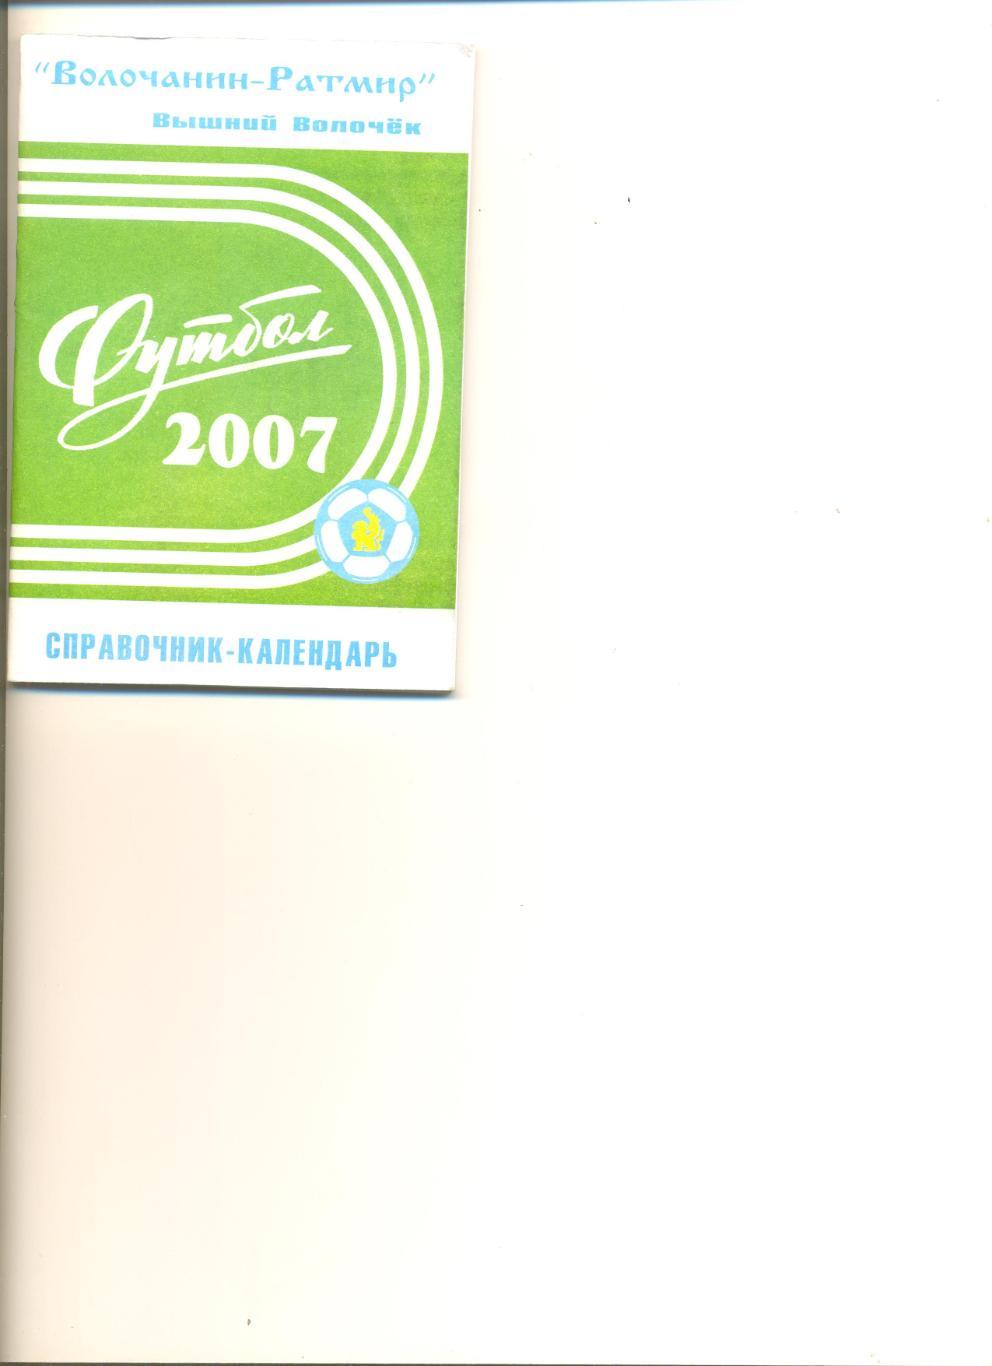 Вышний Волочек - 2007 г. Календарь-справочник. 64 стр. Тираж 300 шт.